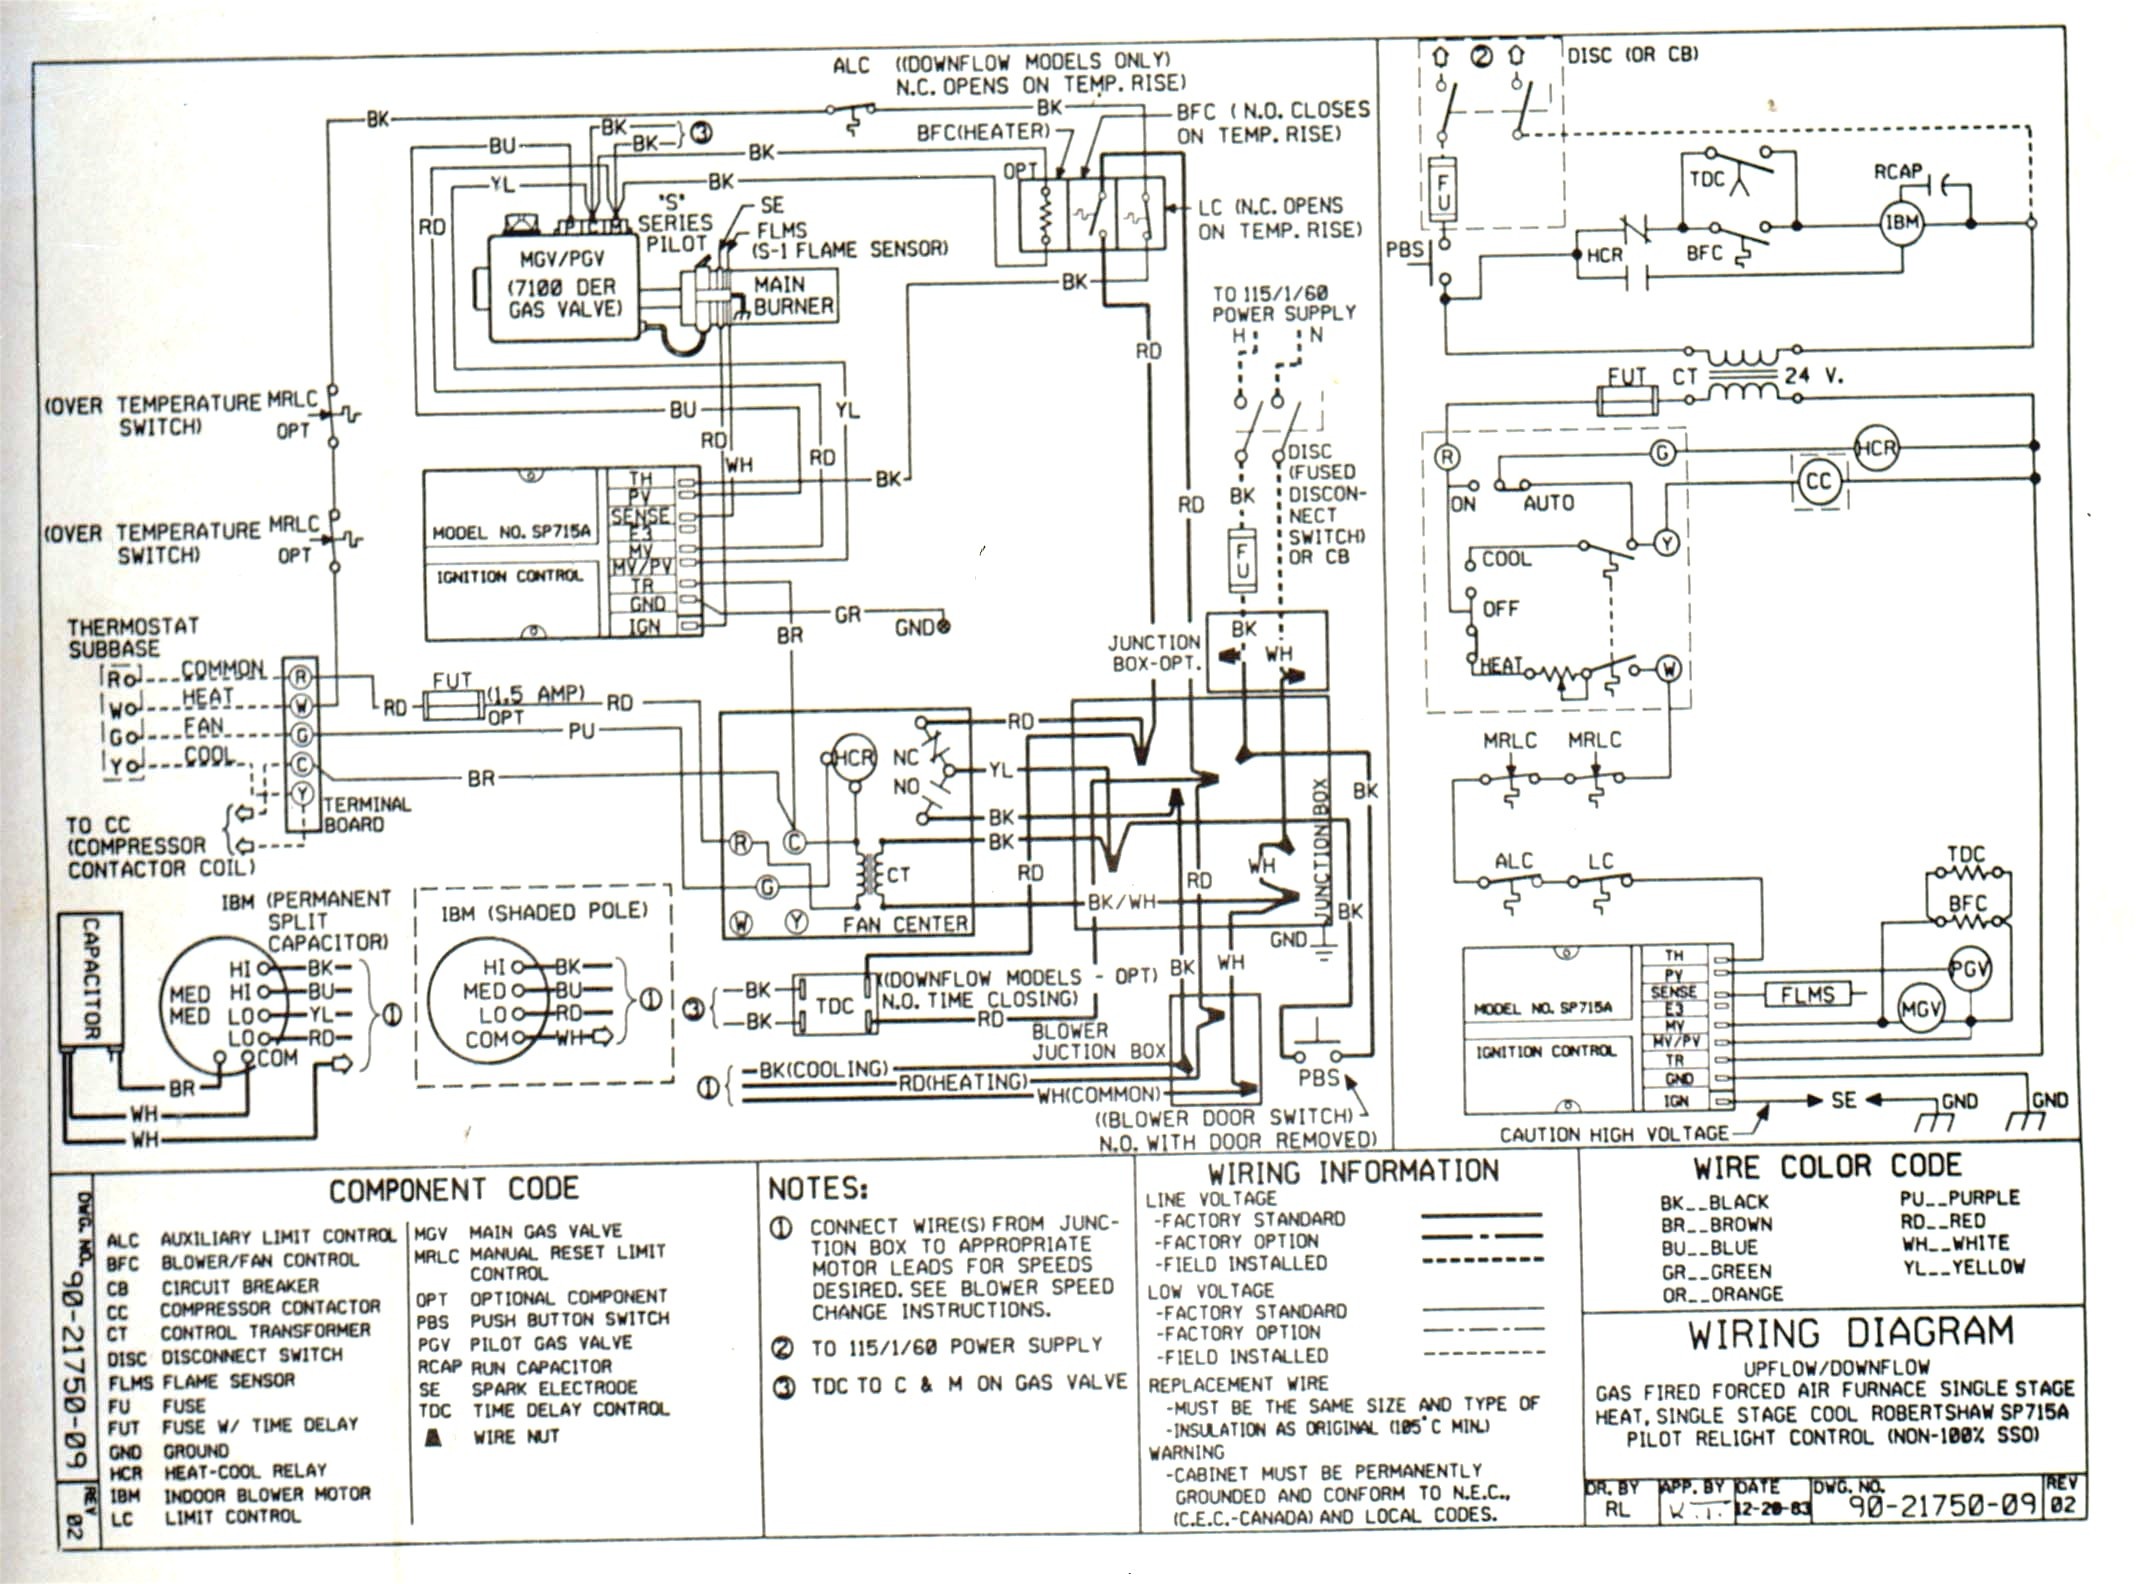 Rheem Thermostat Wiring Diagram Book Rheem Heat Pump Thermostat Wiring Diagram Webtor Me Beauteous Random